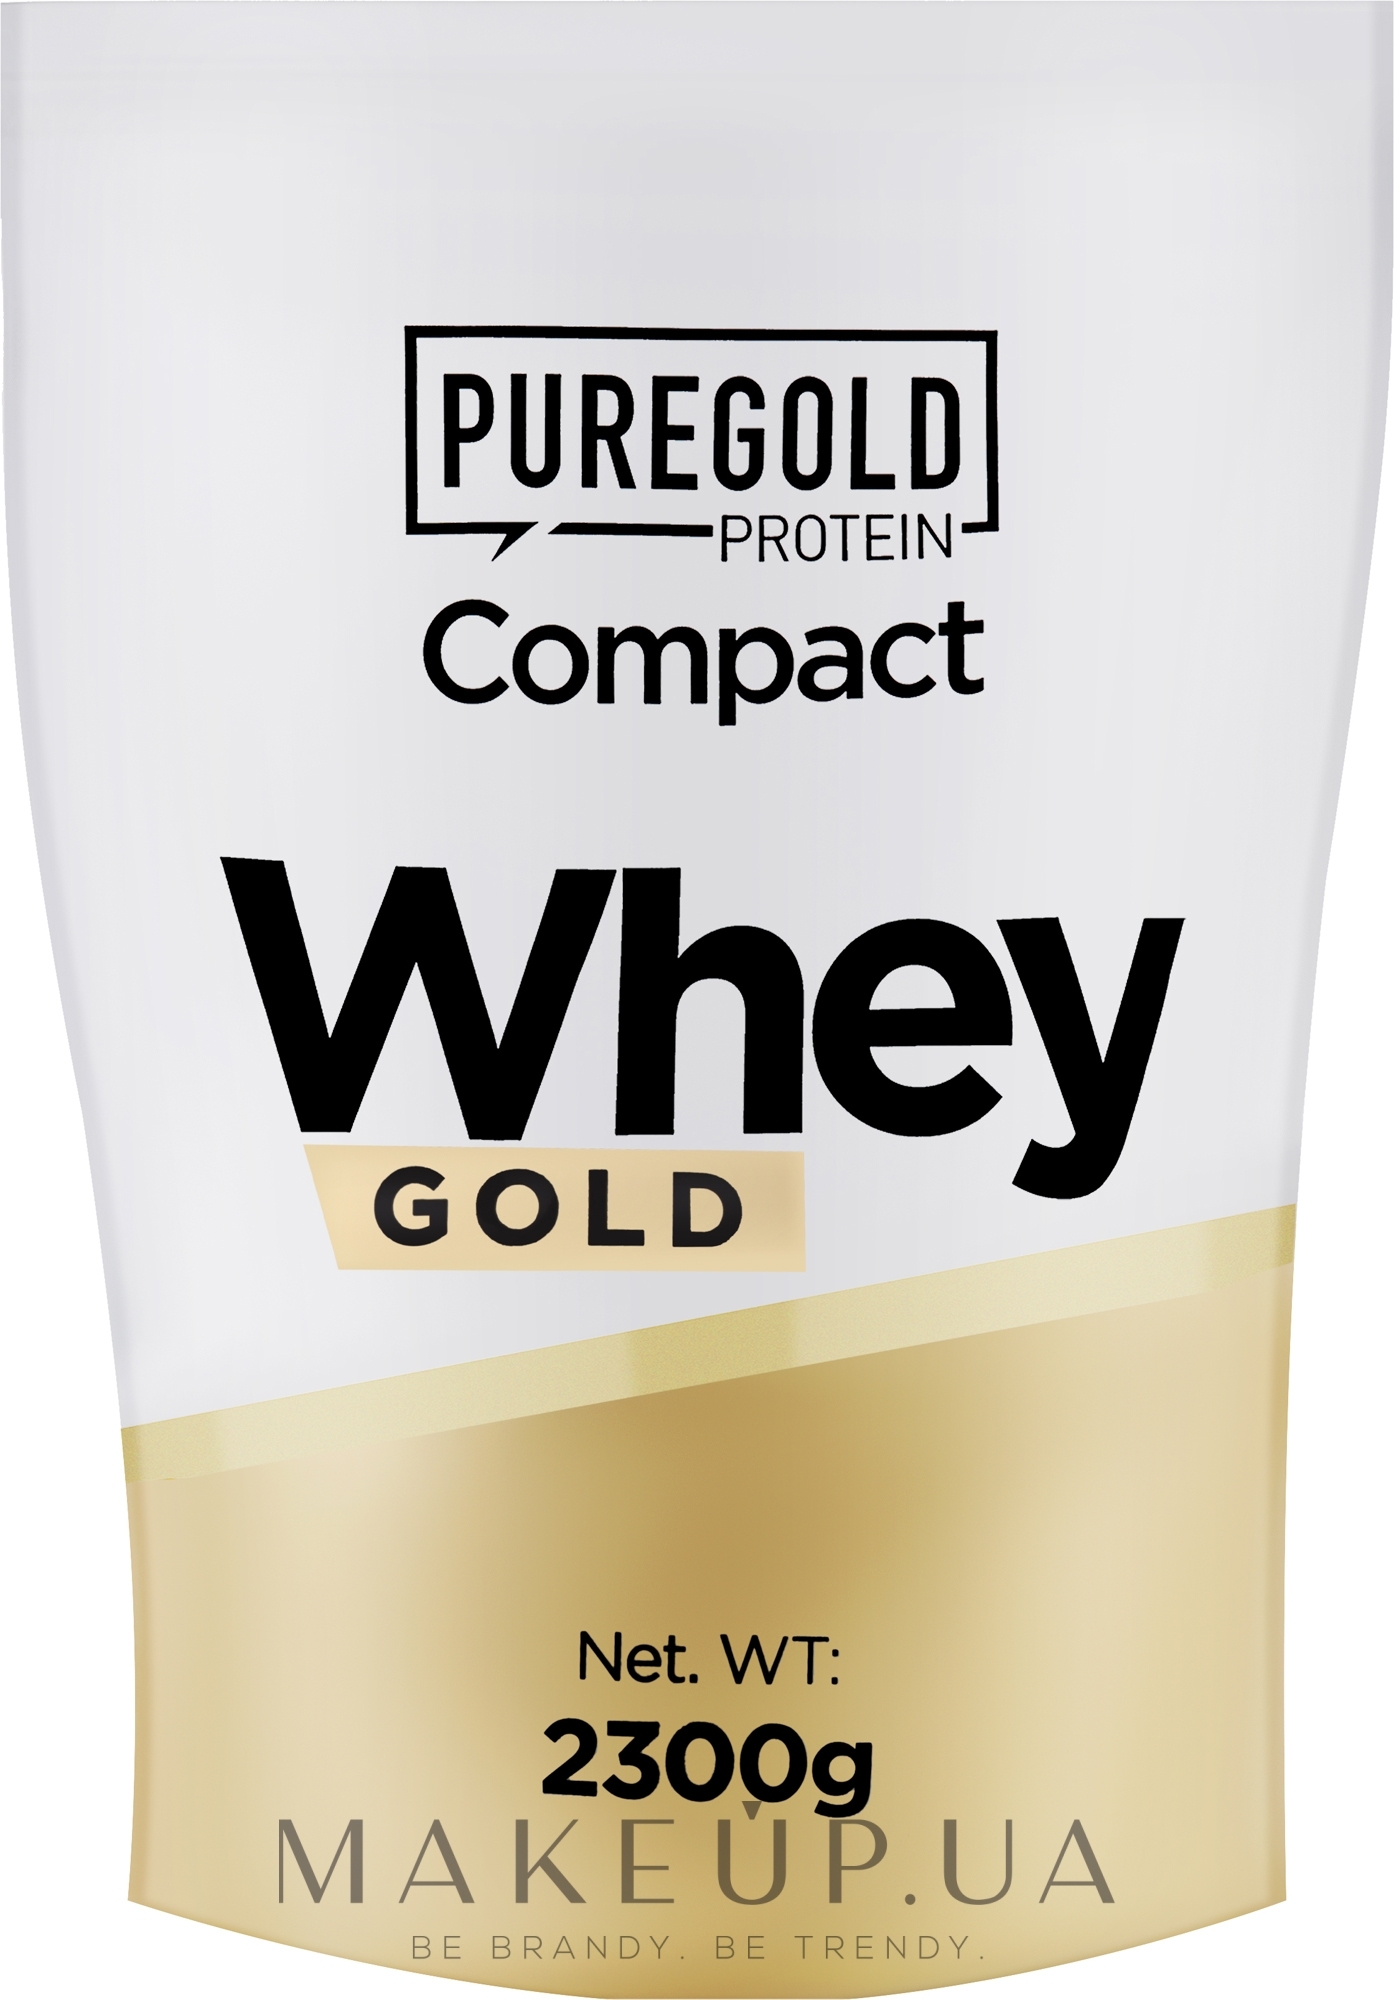 Сироватковий протеїн "Фісташка" - PureGold Protein Compact Whey Gold Pistachio — фото 2300g